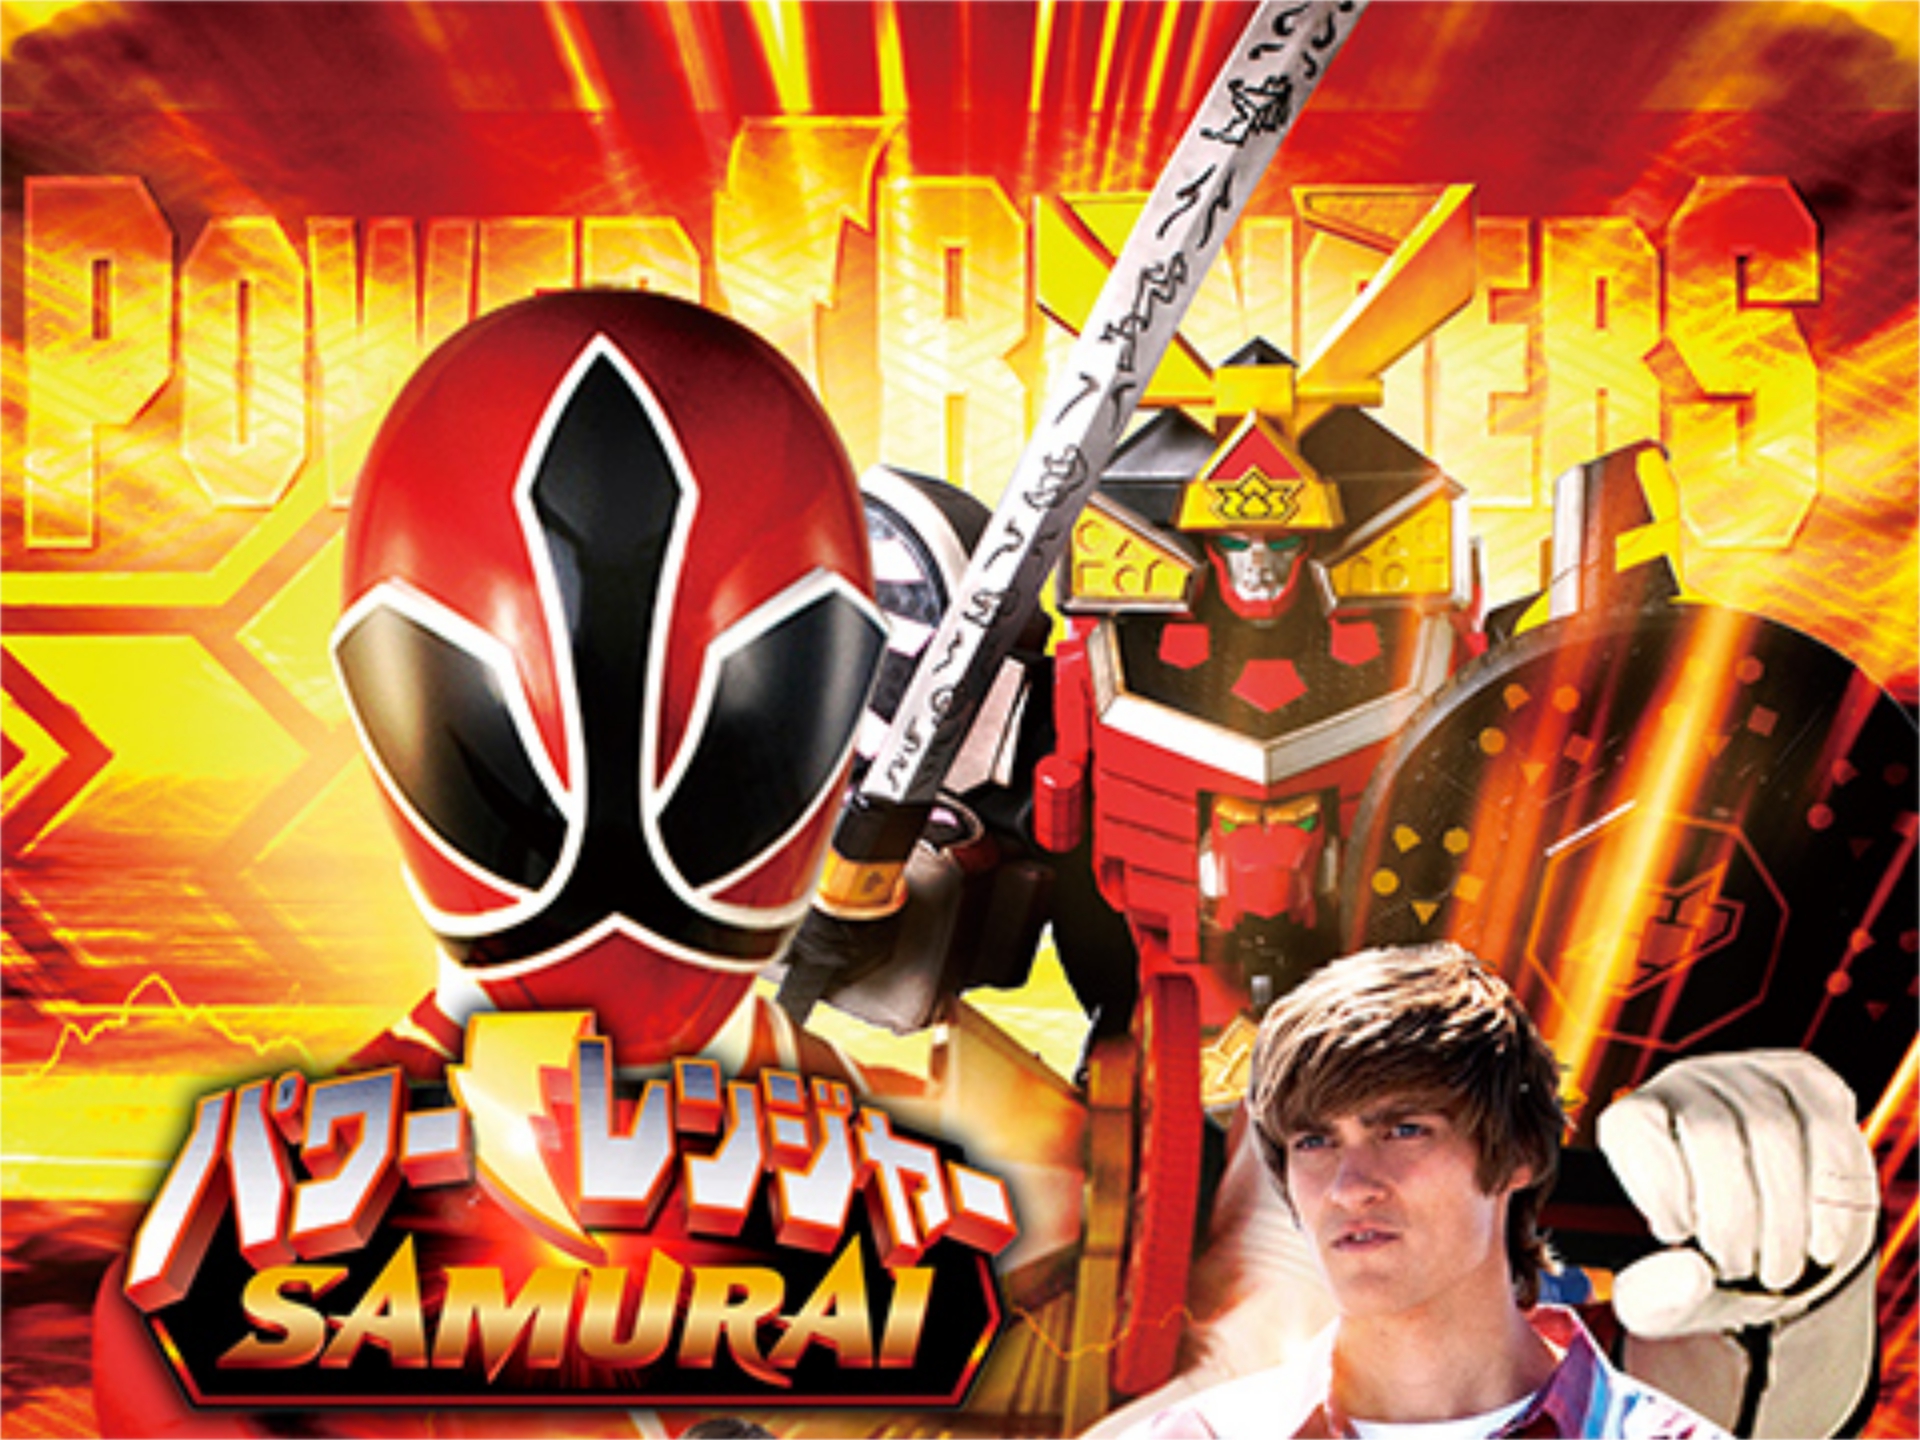 パワーレンジャー Samurai 第1話 第4話のまとめフル動画 初月無料 動画配信サービスのビデオマーケット